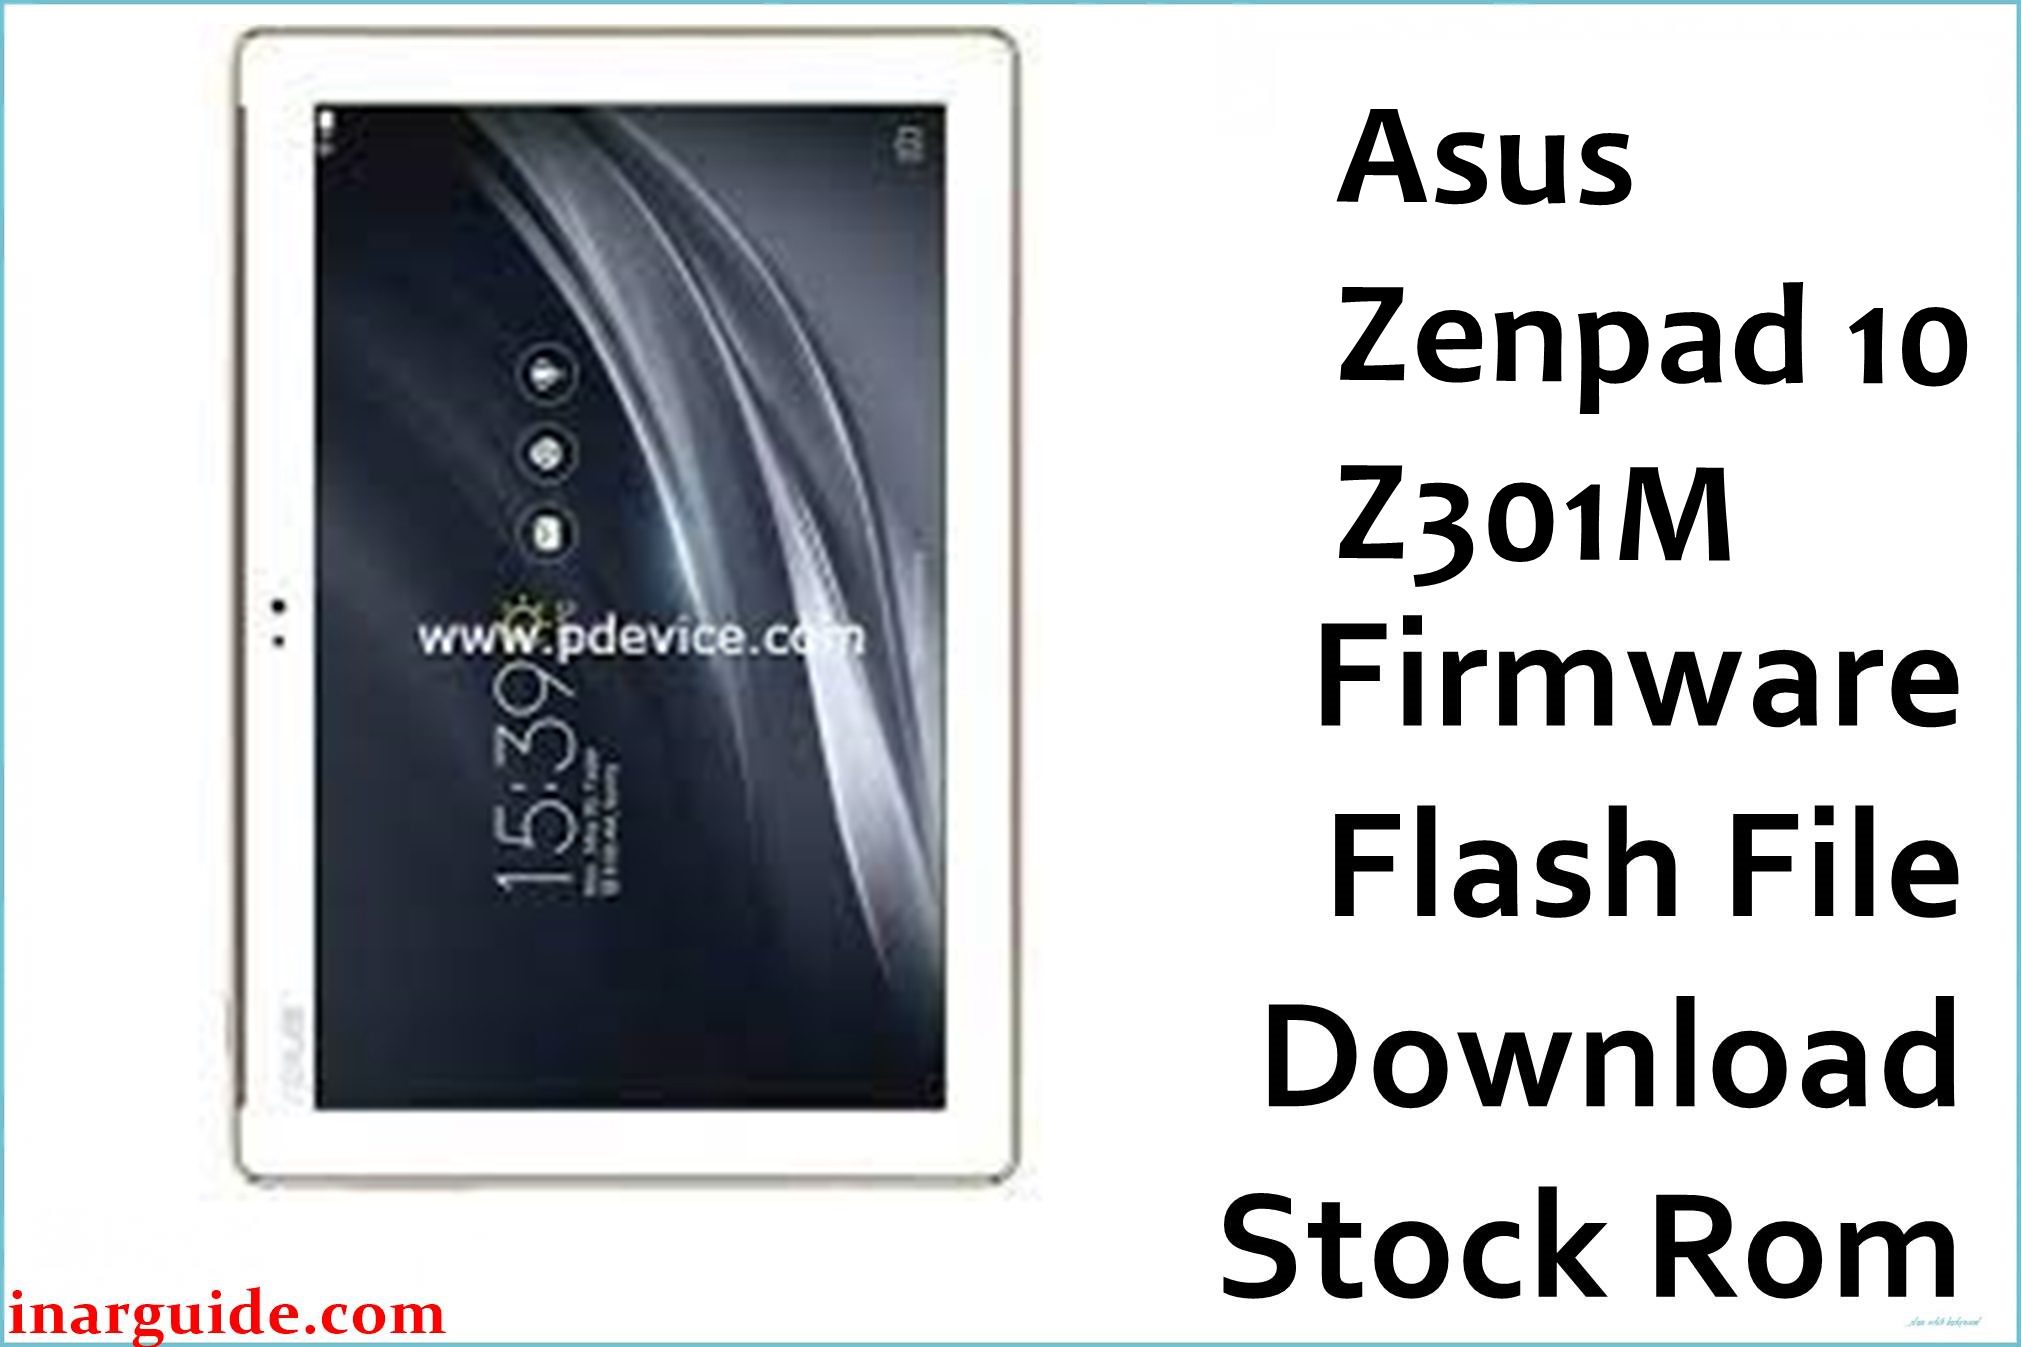 Asus Zenpad 10 Z301M